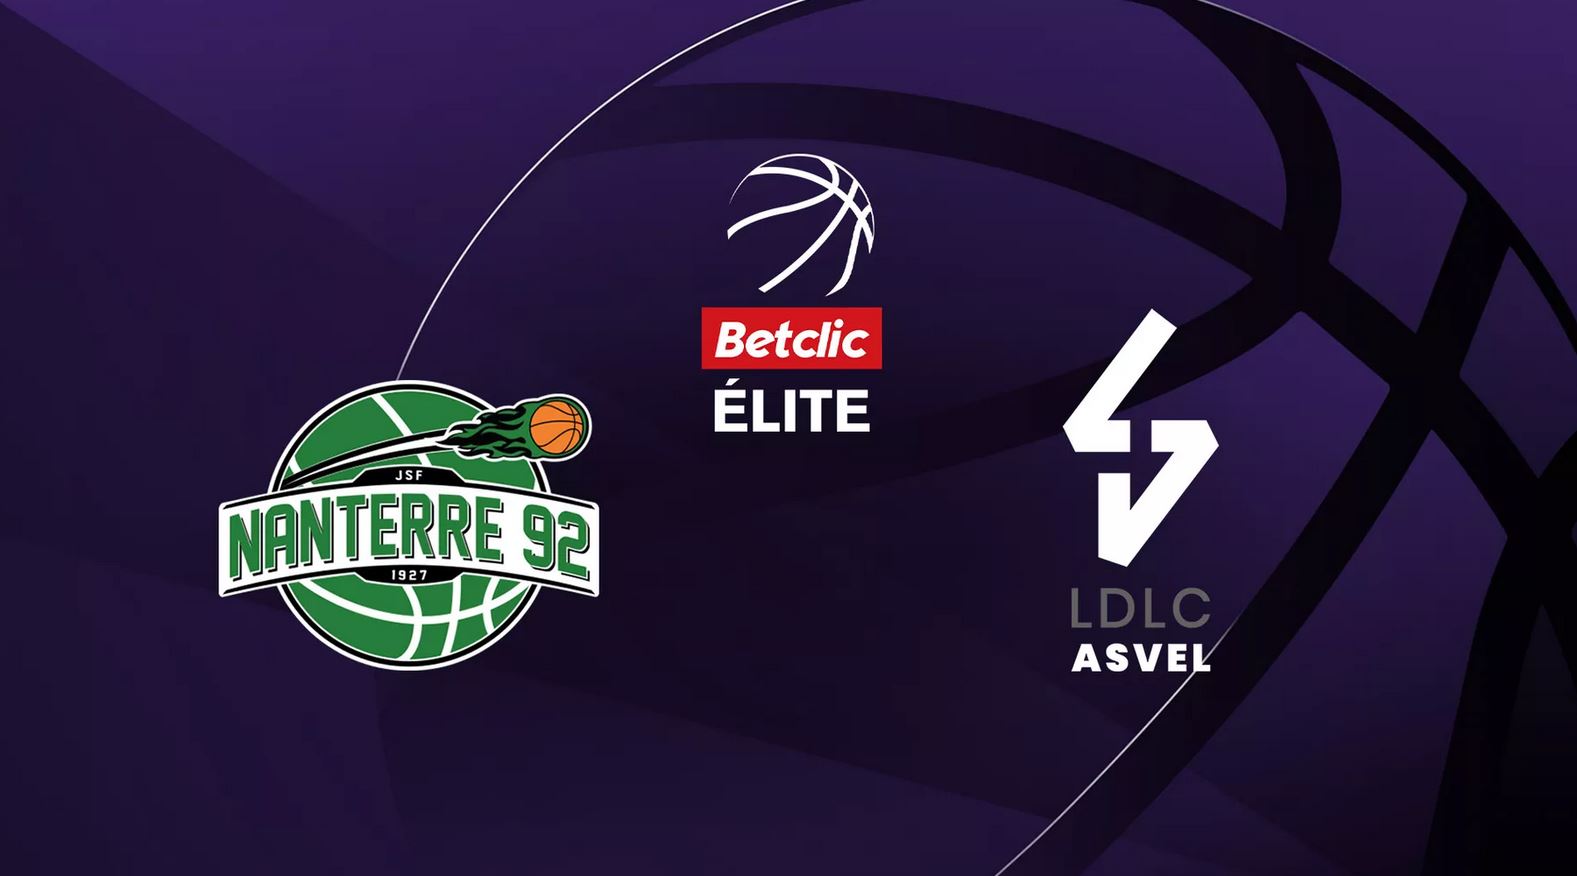 Nanterre 92 / Lyon-Villeurbanne (TV/Streaming) Sur quelle chaîne et à quelle heure regarder le match de Betclic Elite ?